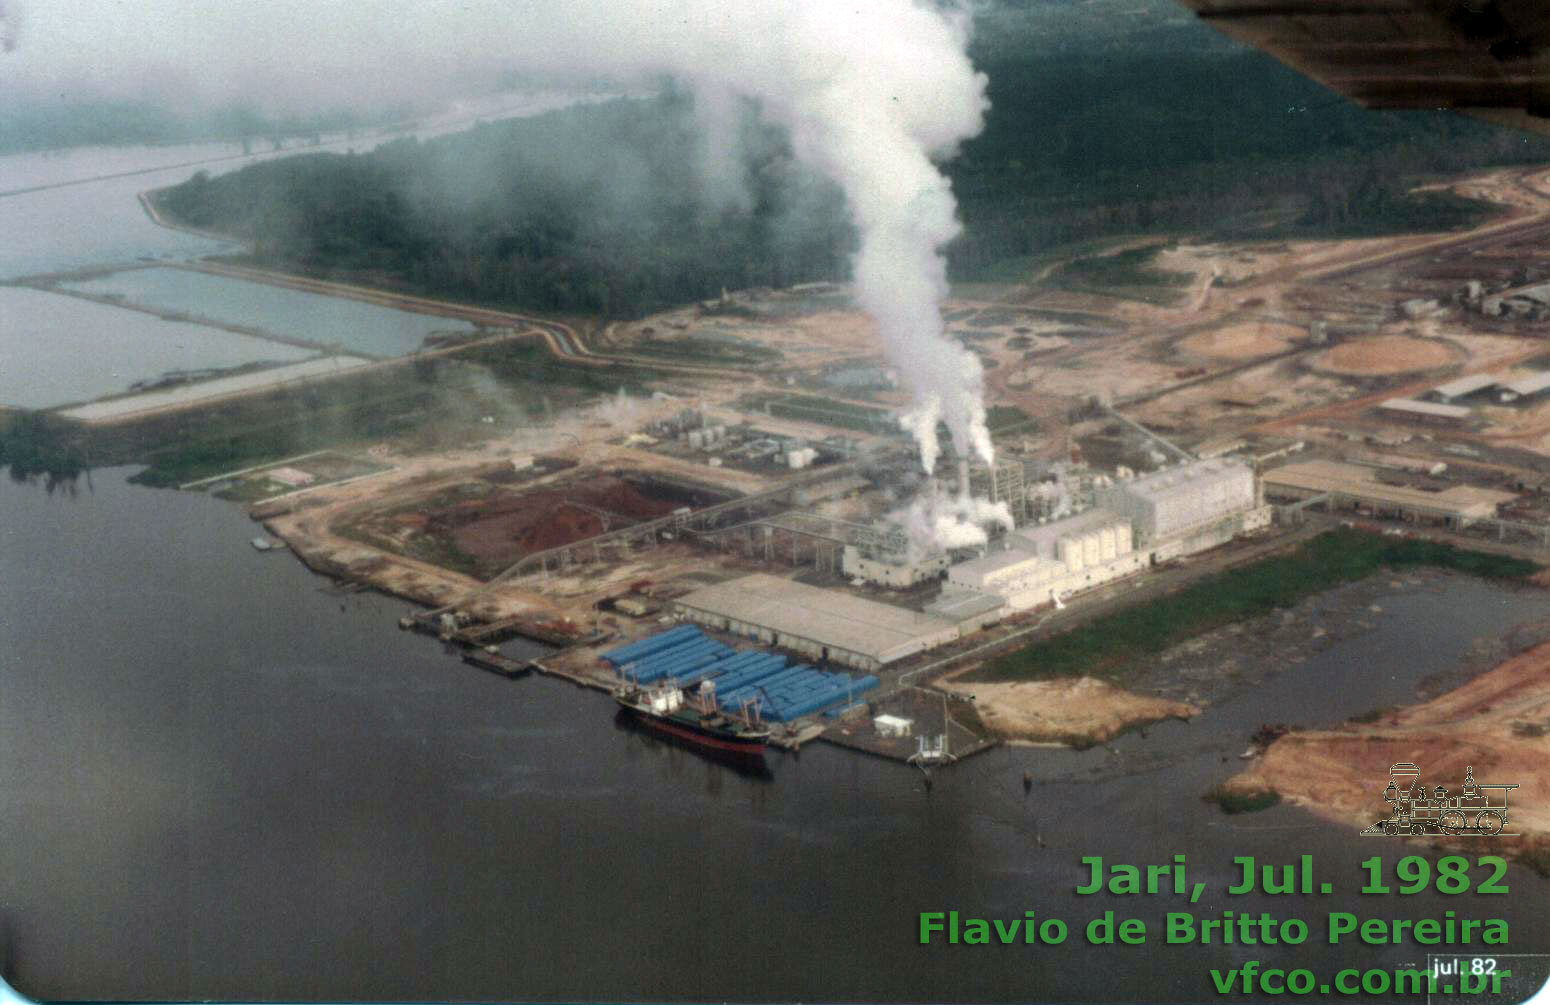 Vista aérea do complexo industrial do Projeto Jari, vendo-se a fábrica de celulose, a usina térmica e o pátio de estocagem